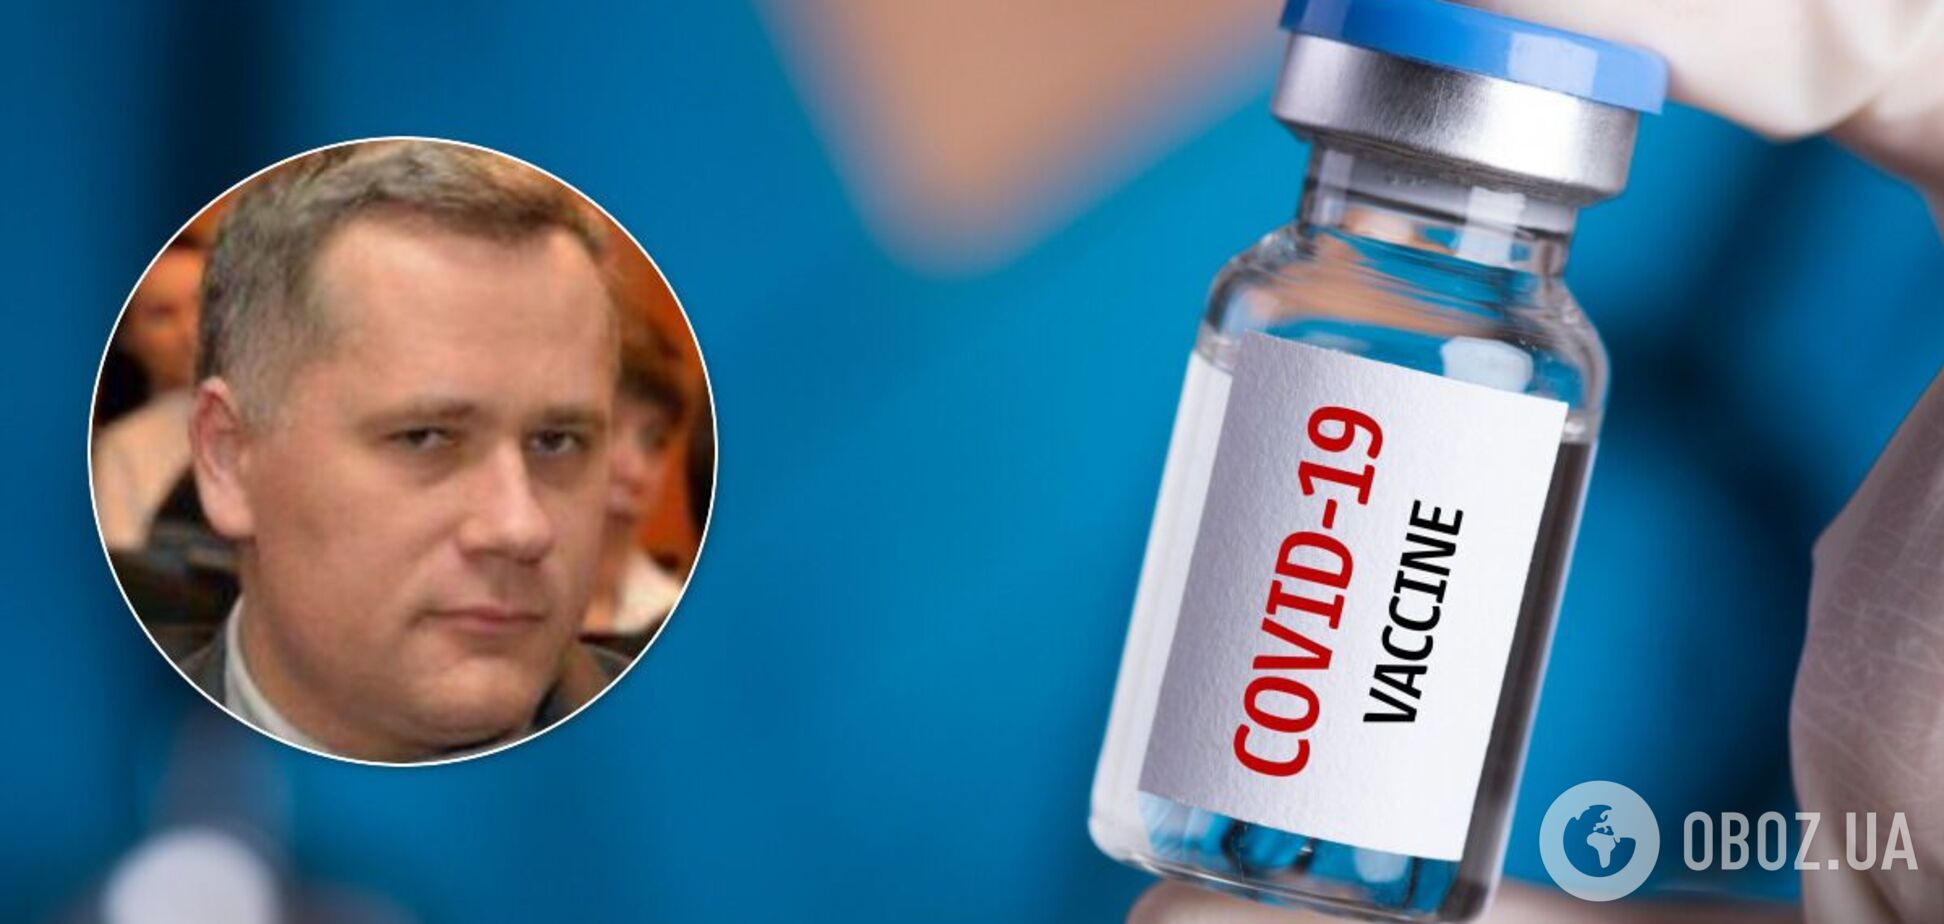 Закупку вакцин от COVID-19 саботировал функционер Офиса президента, – источник